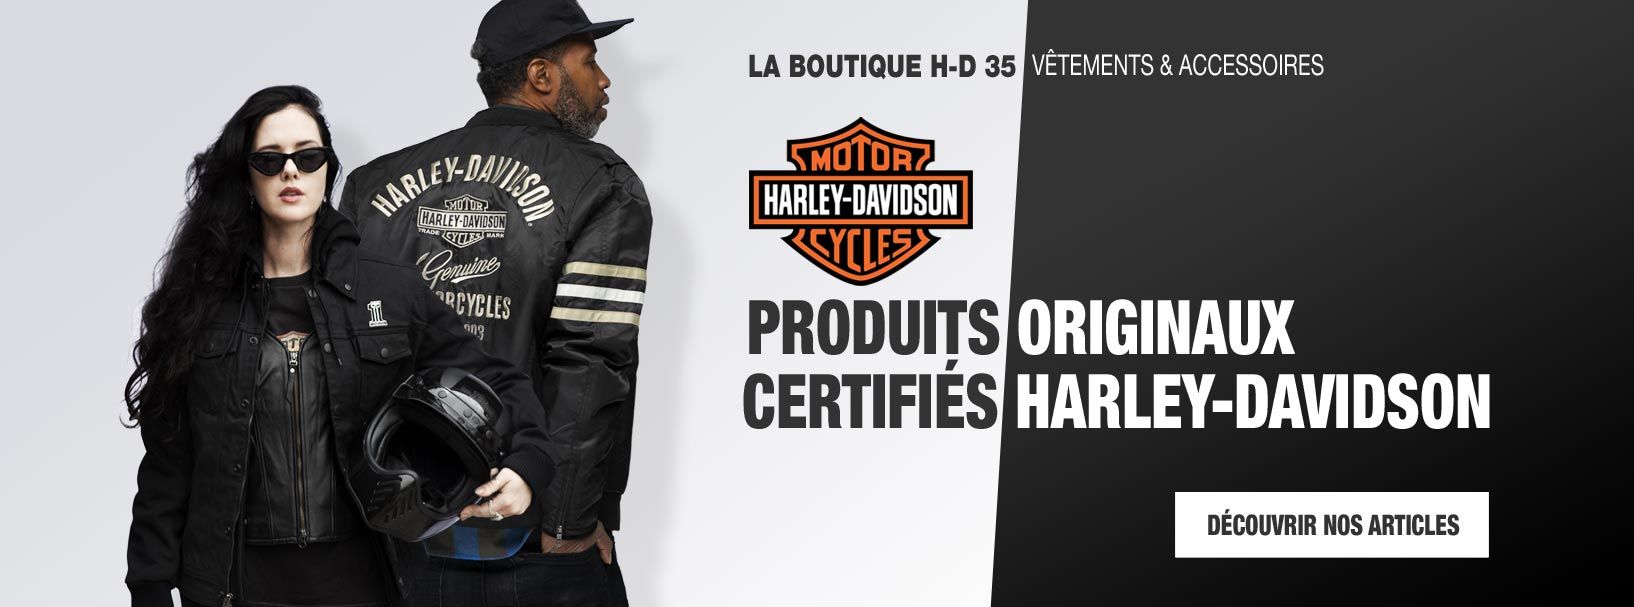 Harley-Davidson : boutique vêtements et accessoires H-D > Boutique-HD35